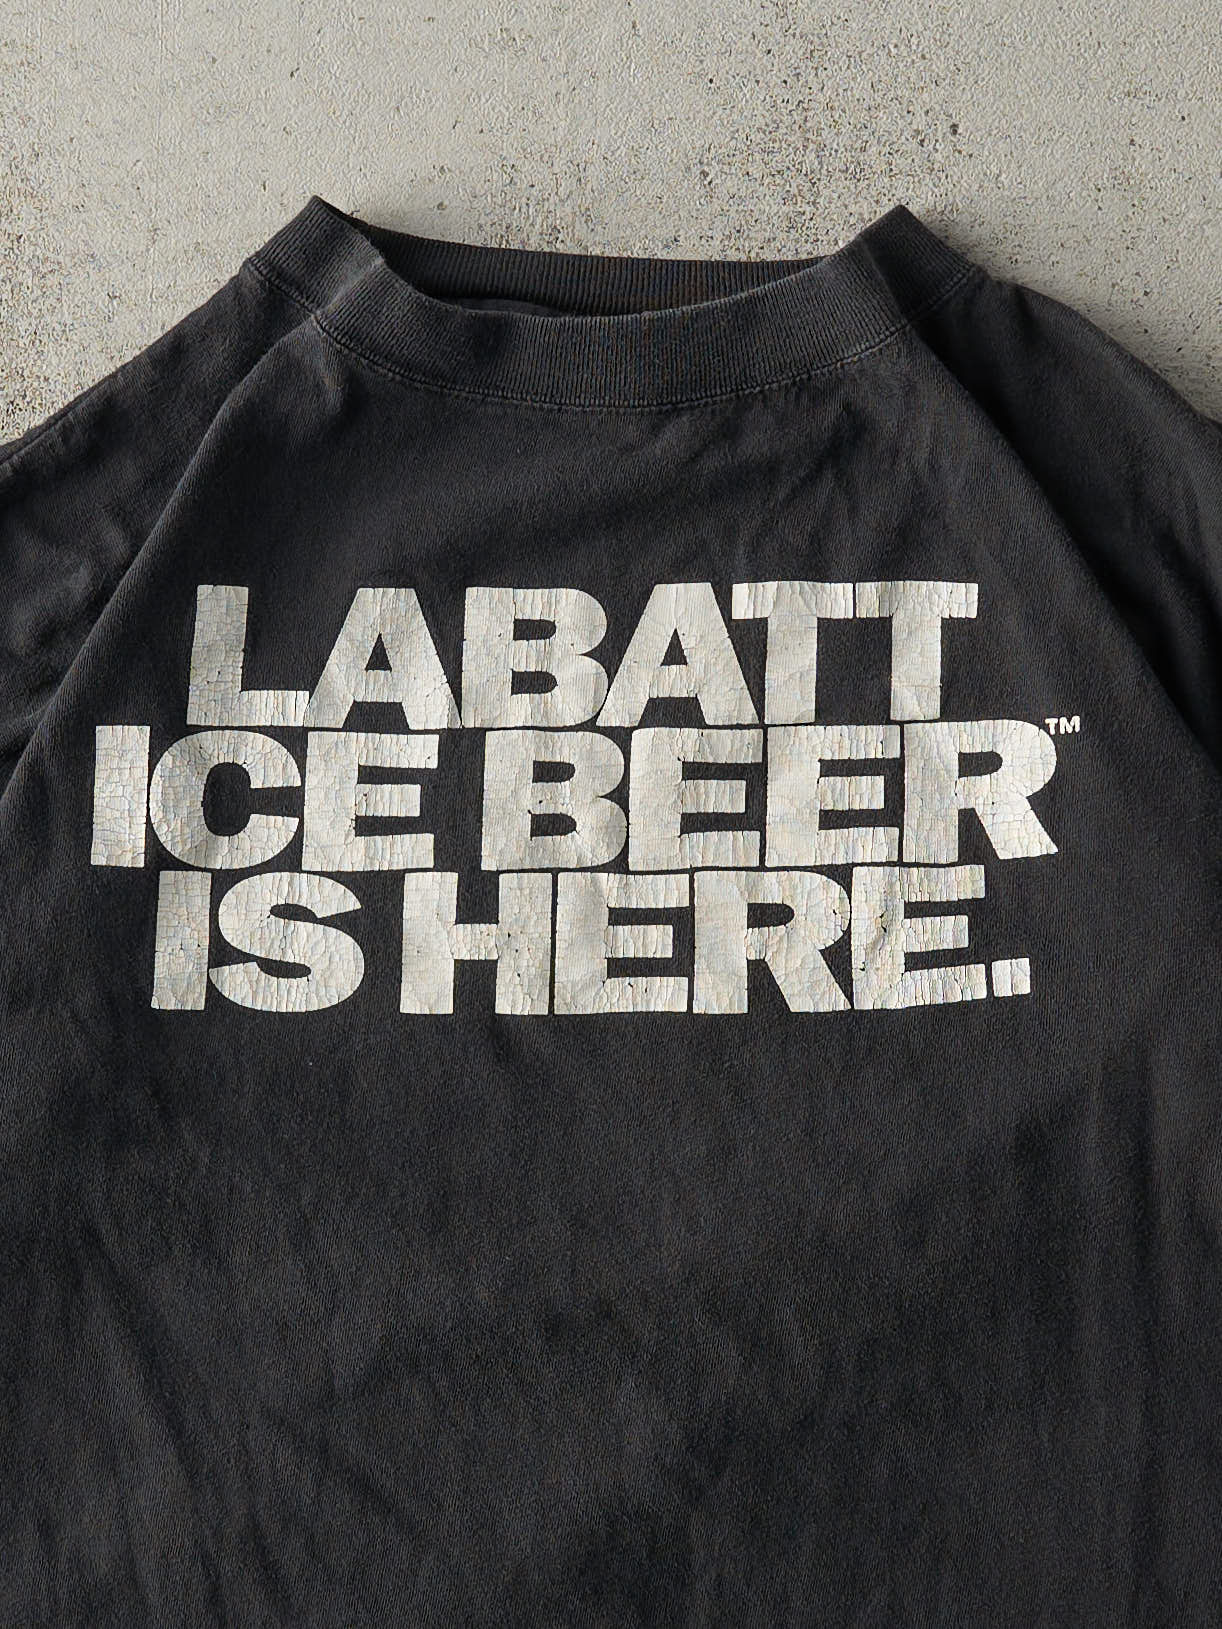 Vintage 90s Black Labatt Ice Beer Tee (L)